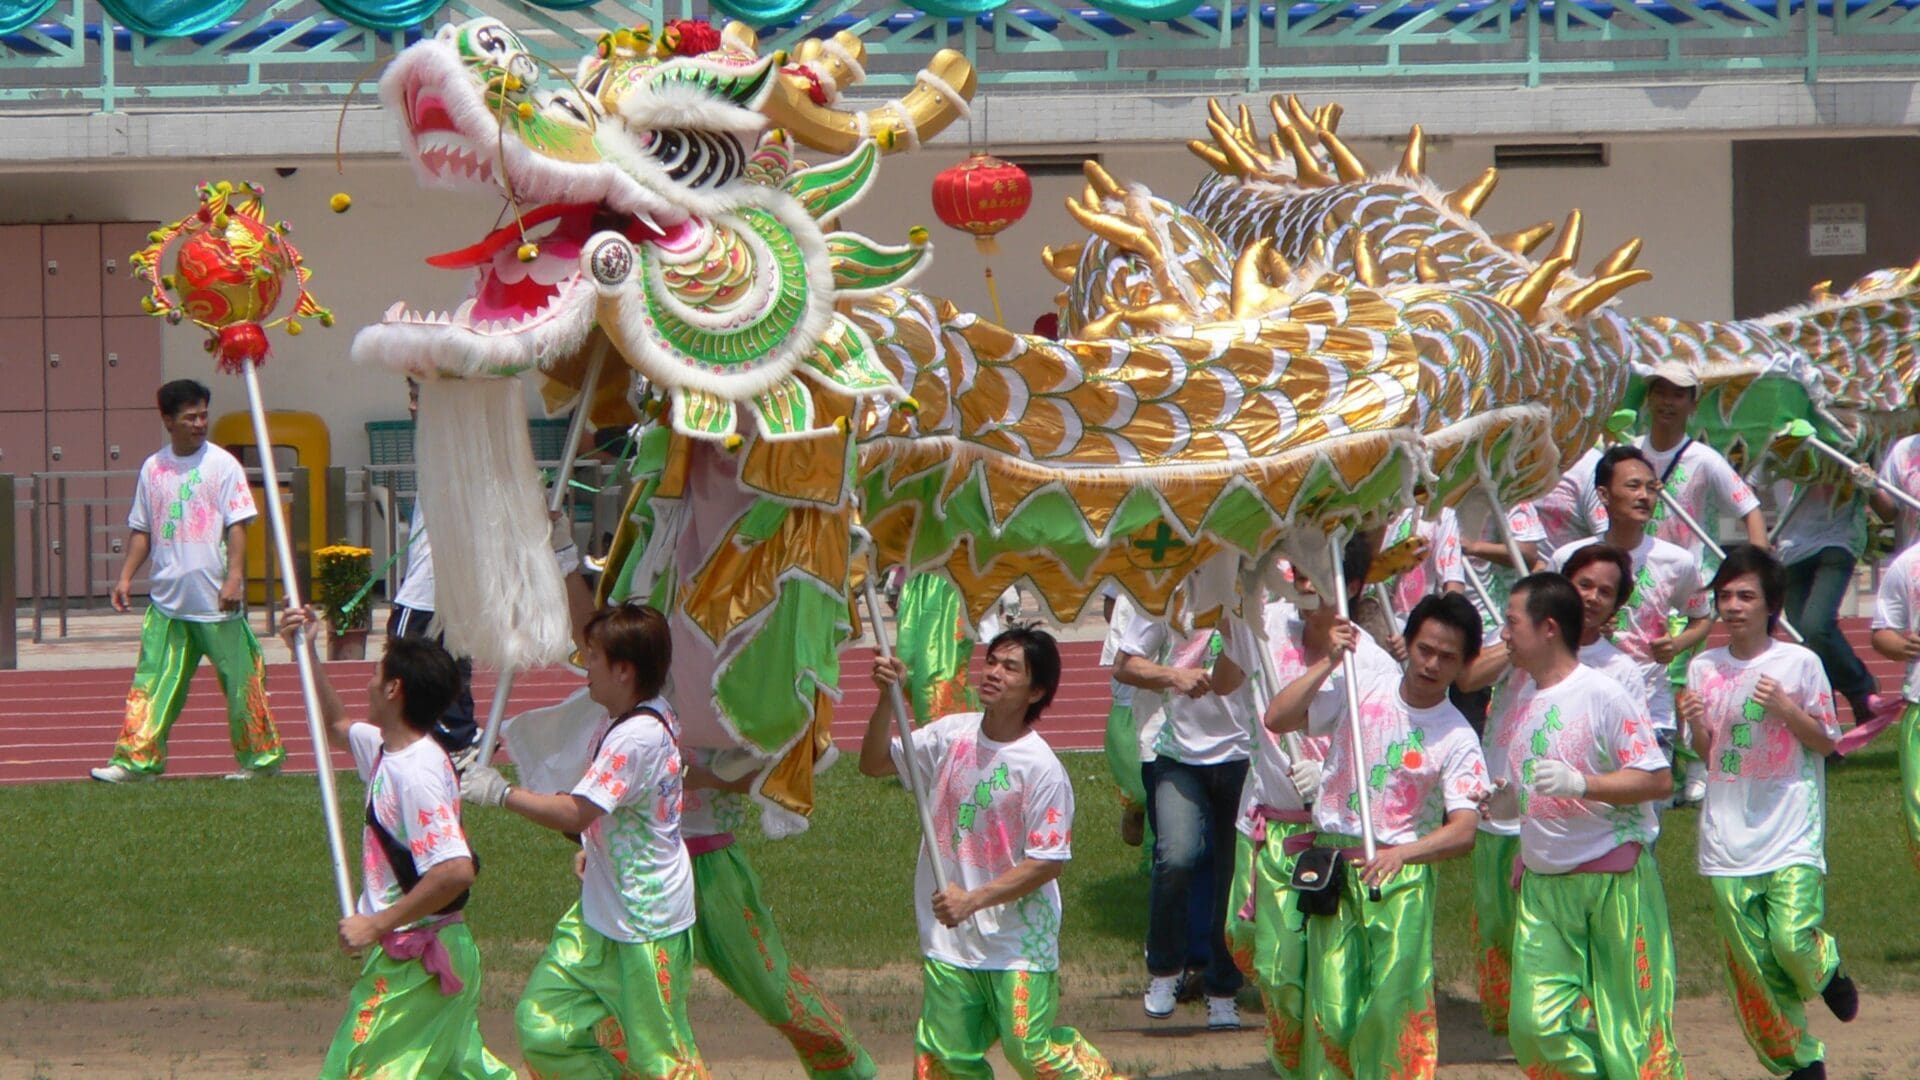 Dragon parade in China.